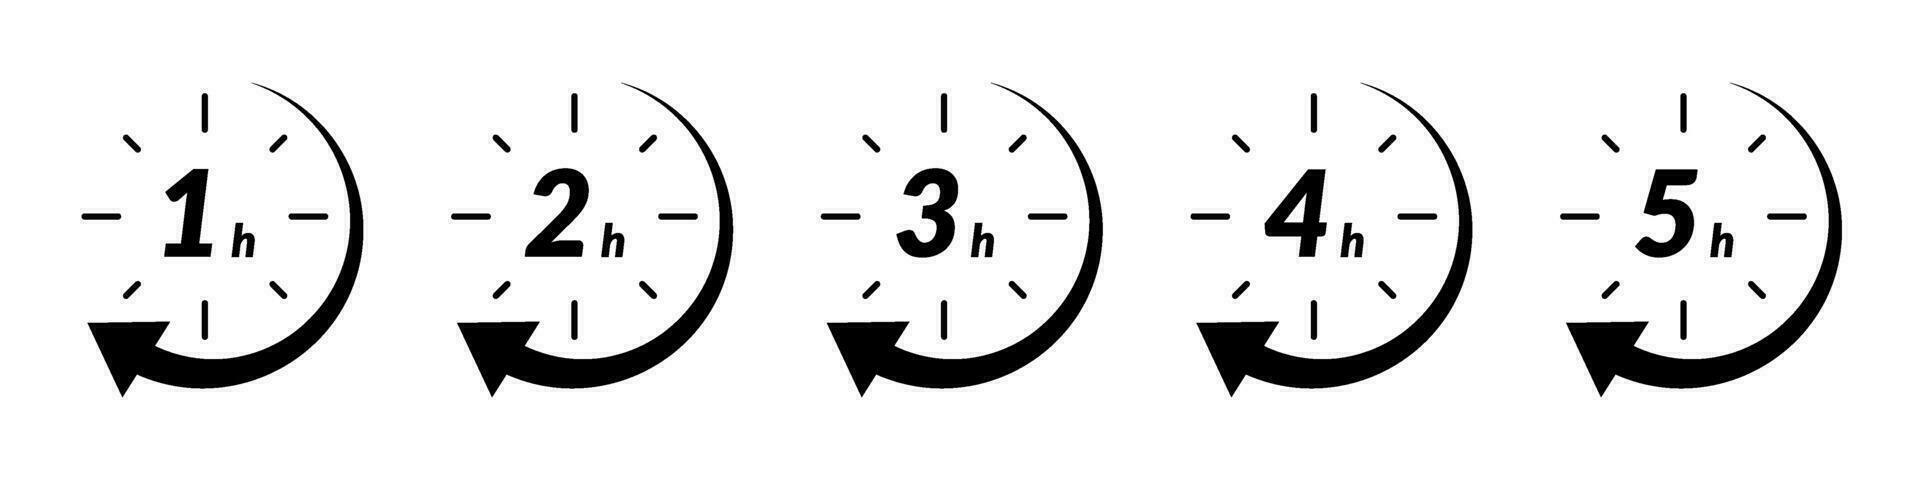 snabb leverans tid ikon med klocka och pil. för försäljning, erbjudande, och rabatt logotyper. funktioner 2, 3, 4, och 5 timmar märken i cirkel. platt vektor illustrationer isolerat i bakgrund.